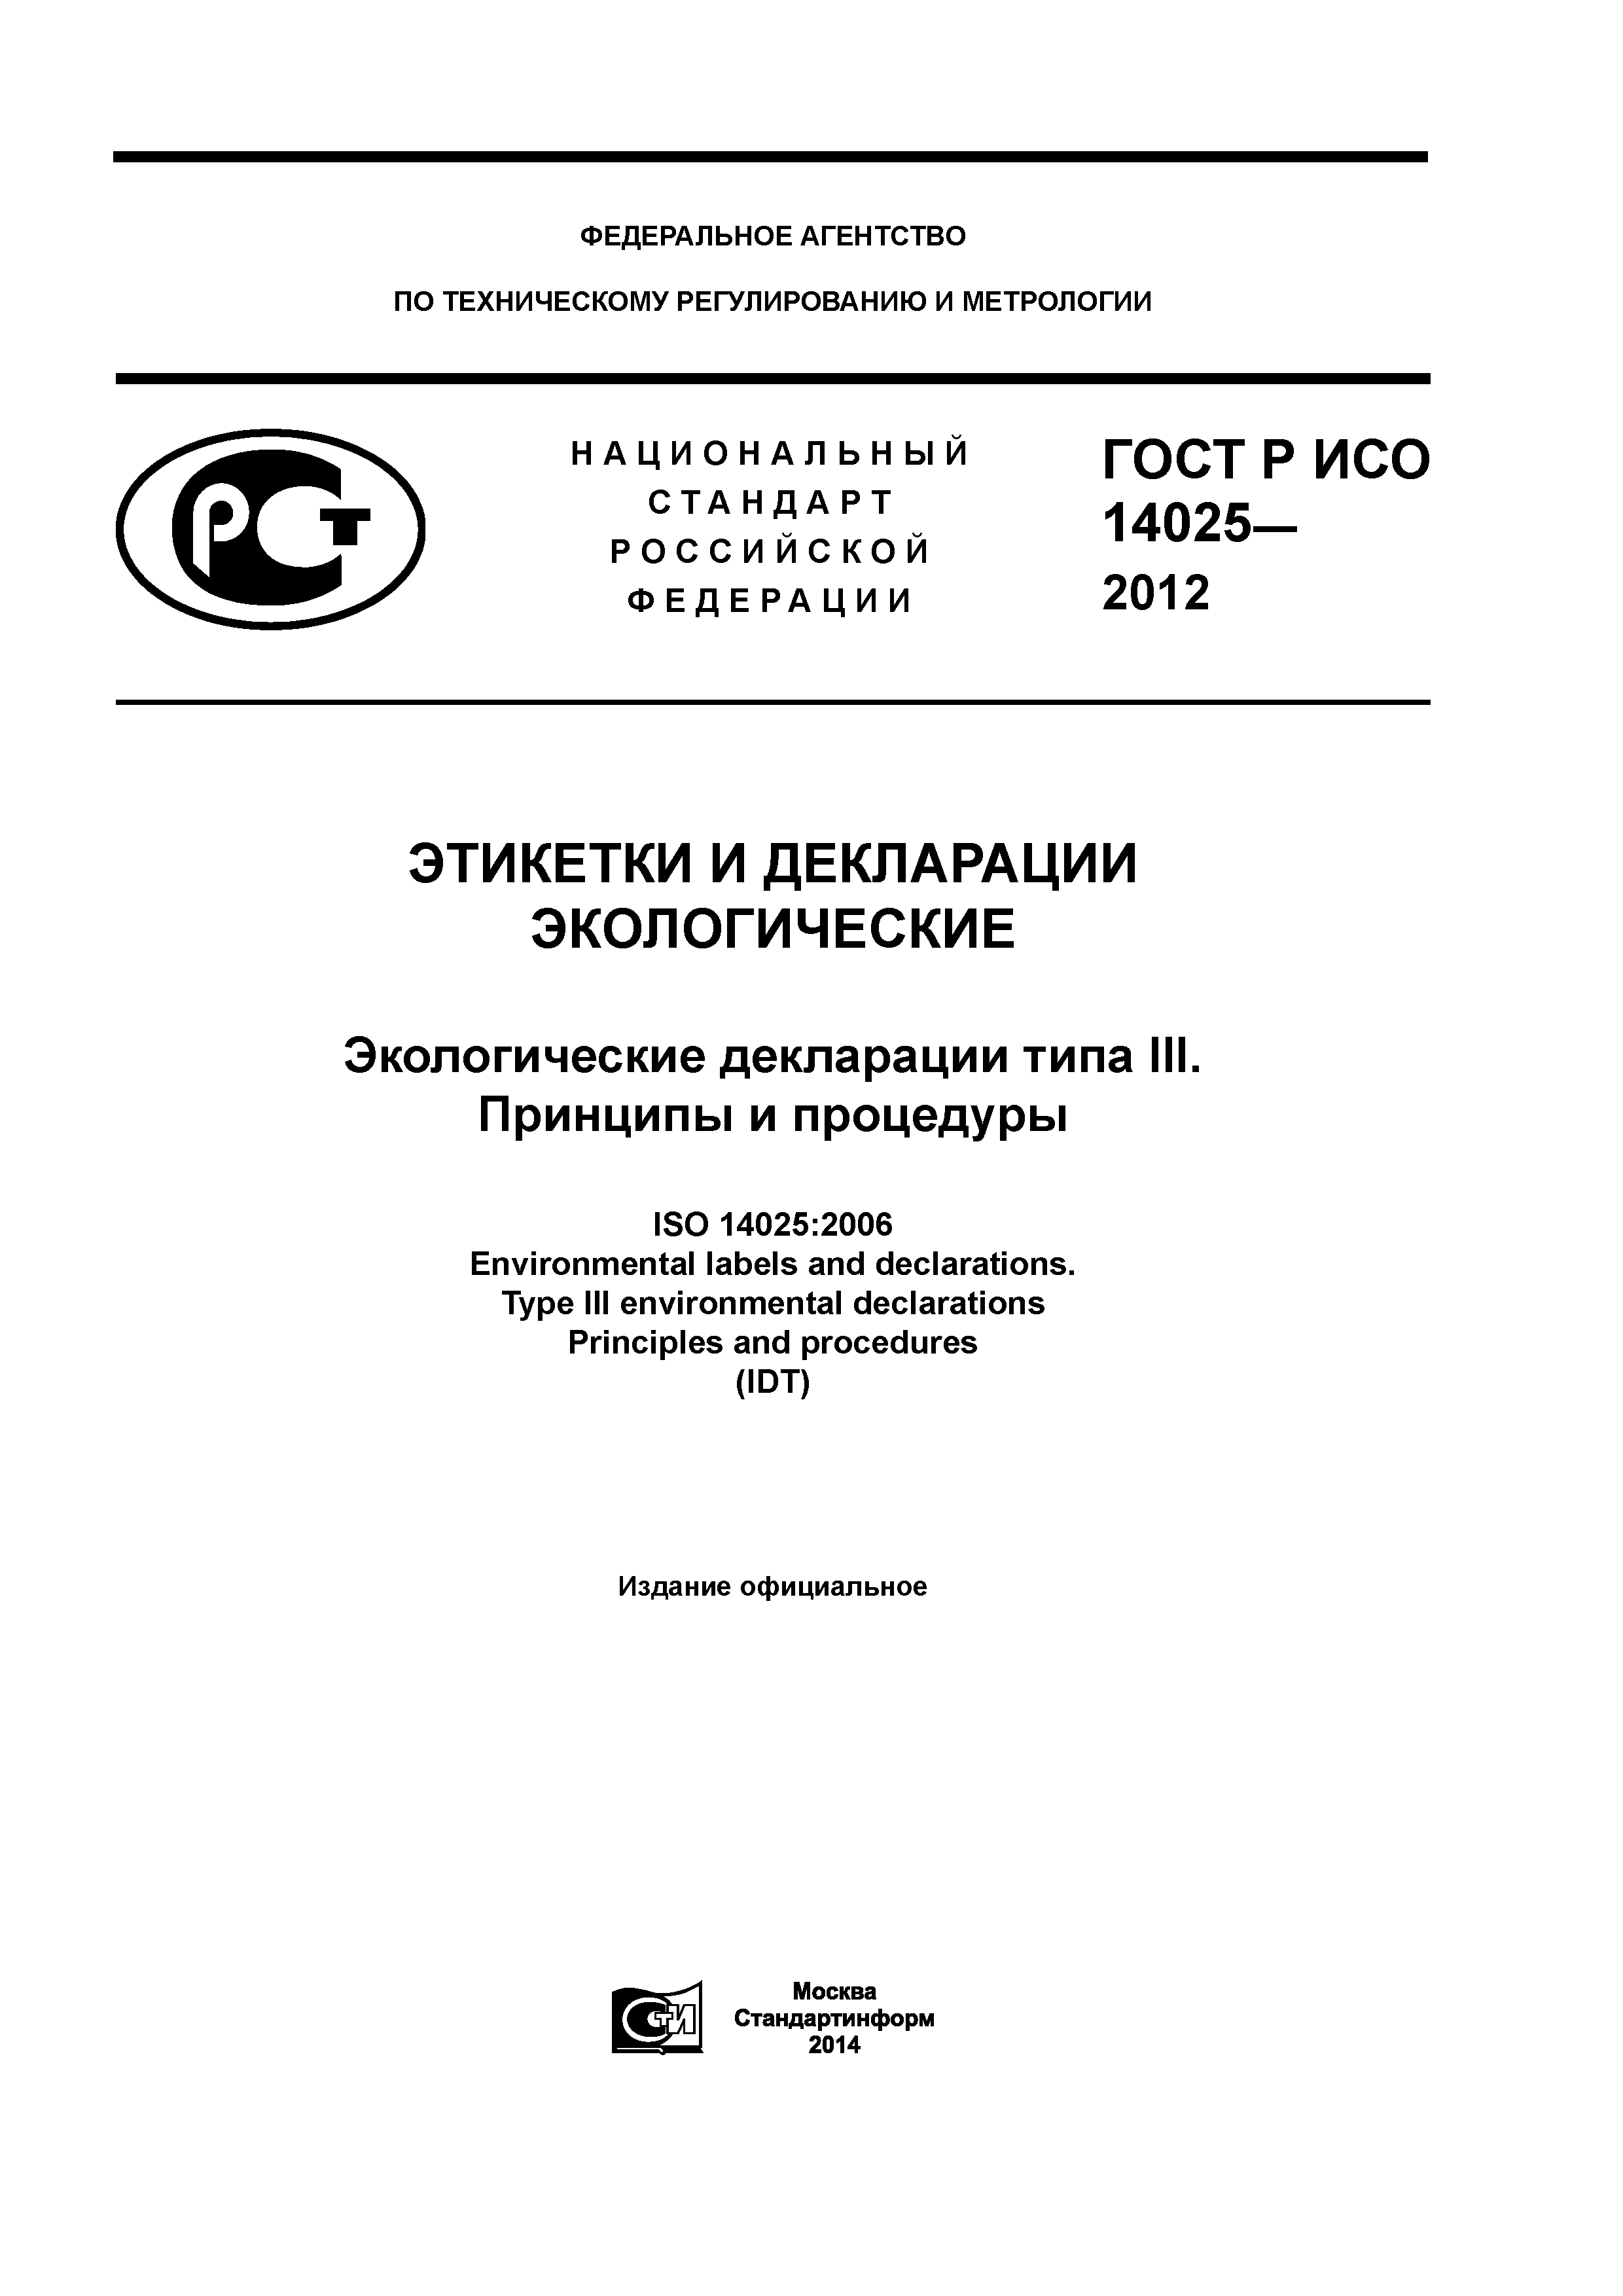 ГОСТ Р ИСО 14025-2012